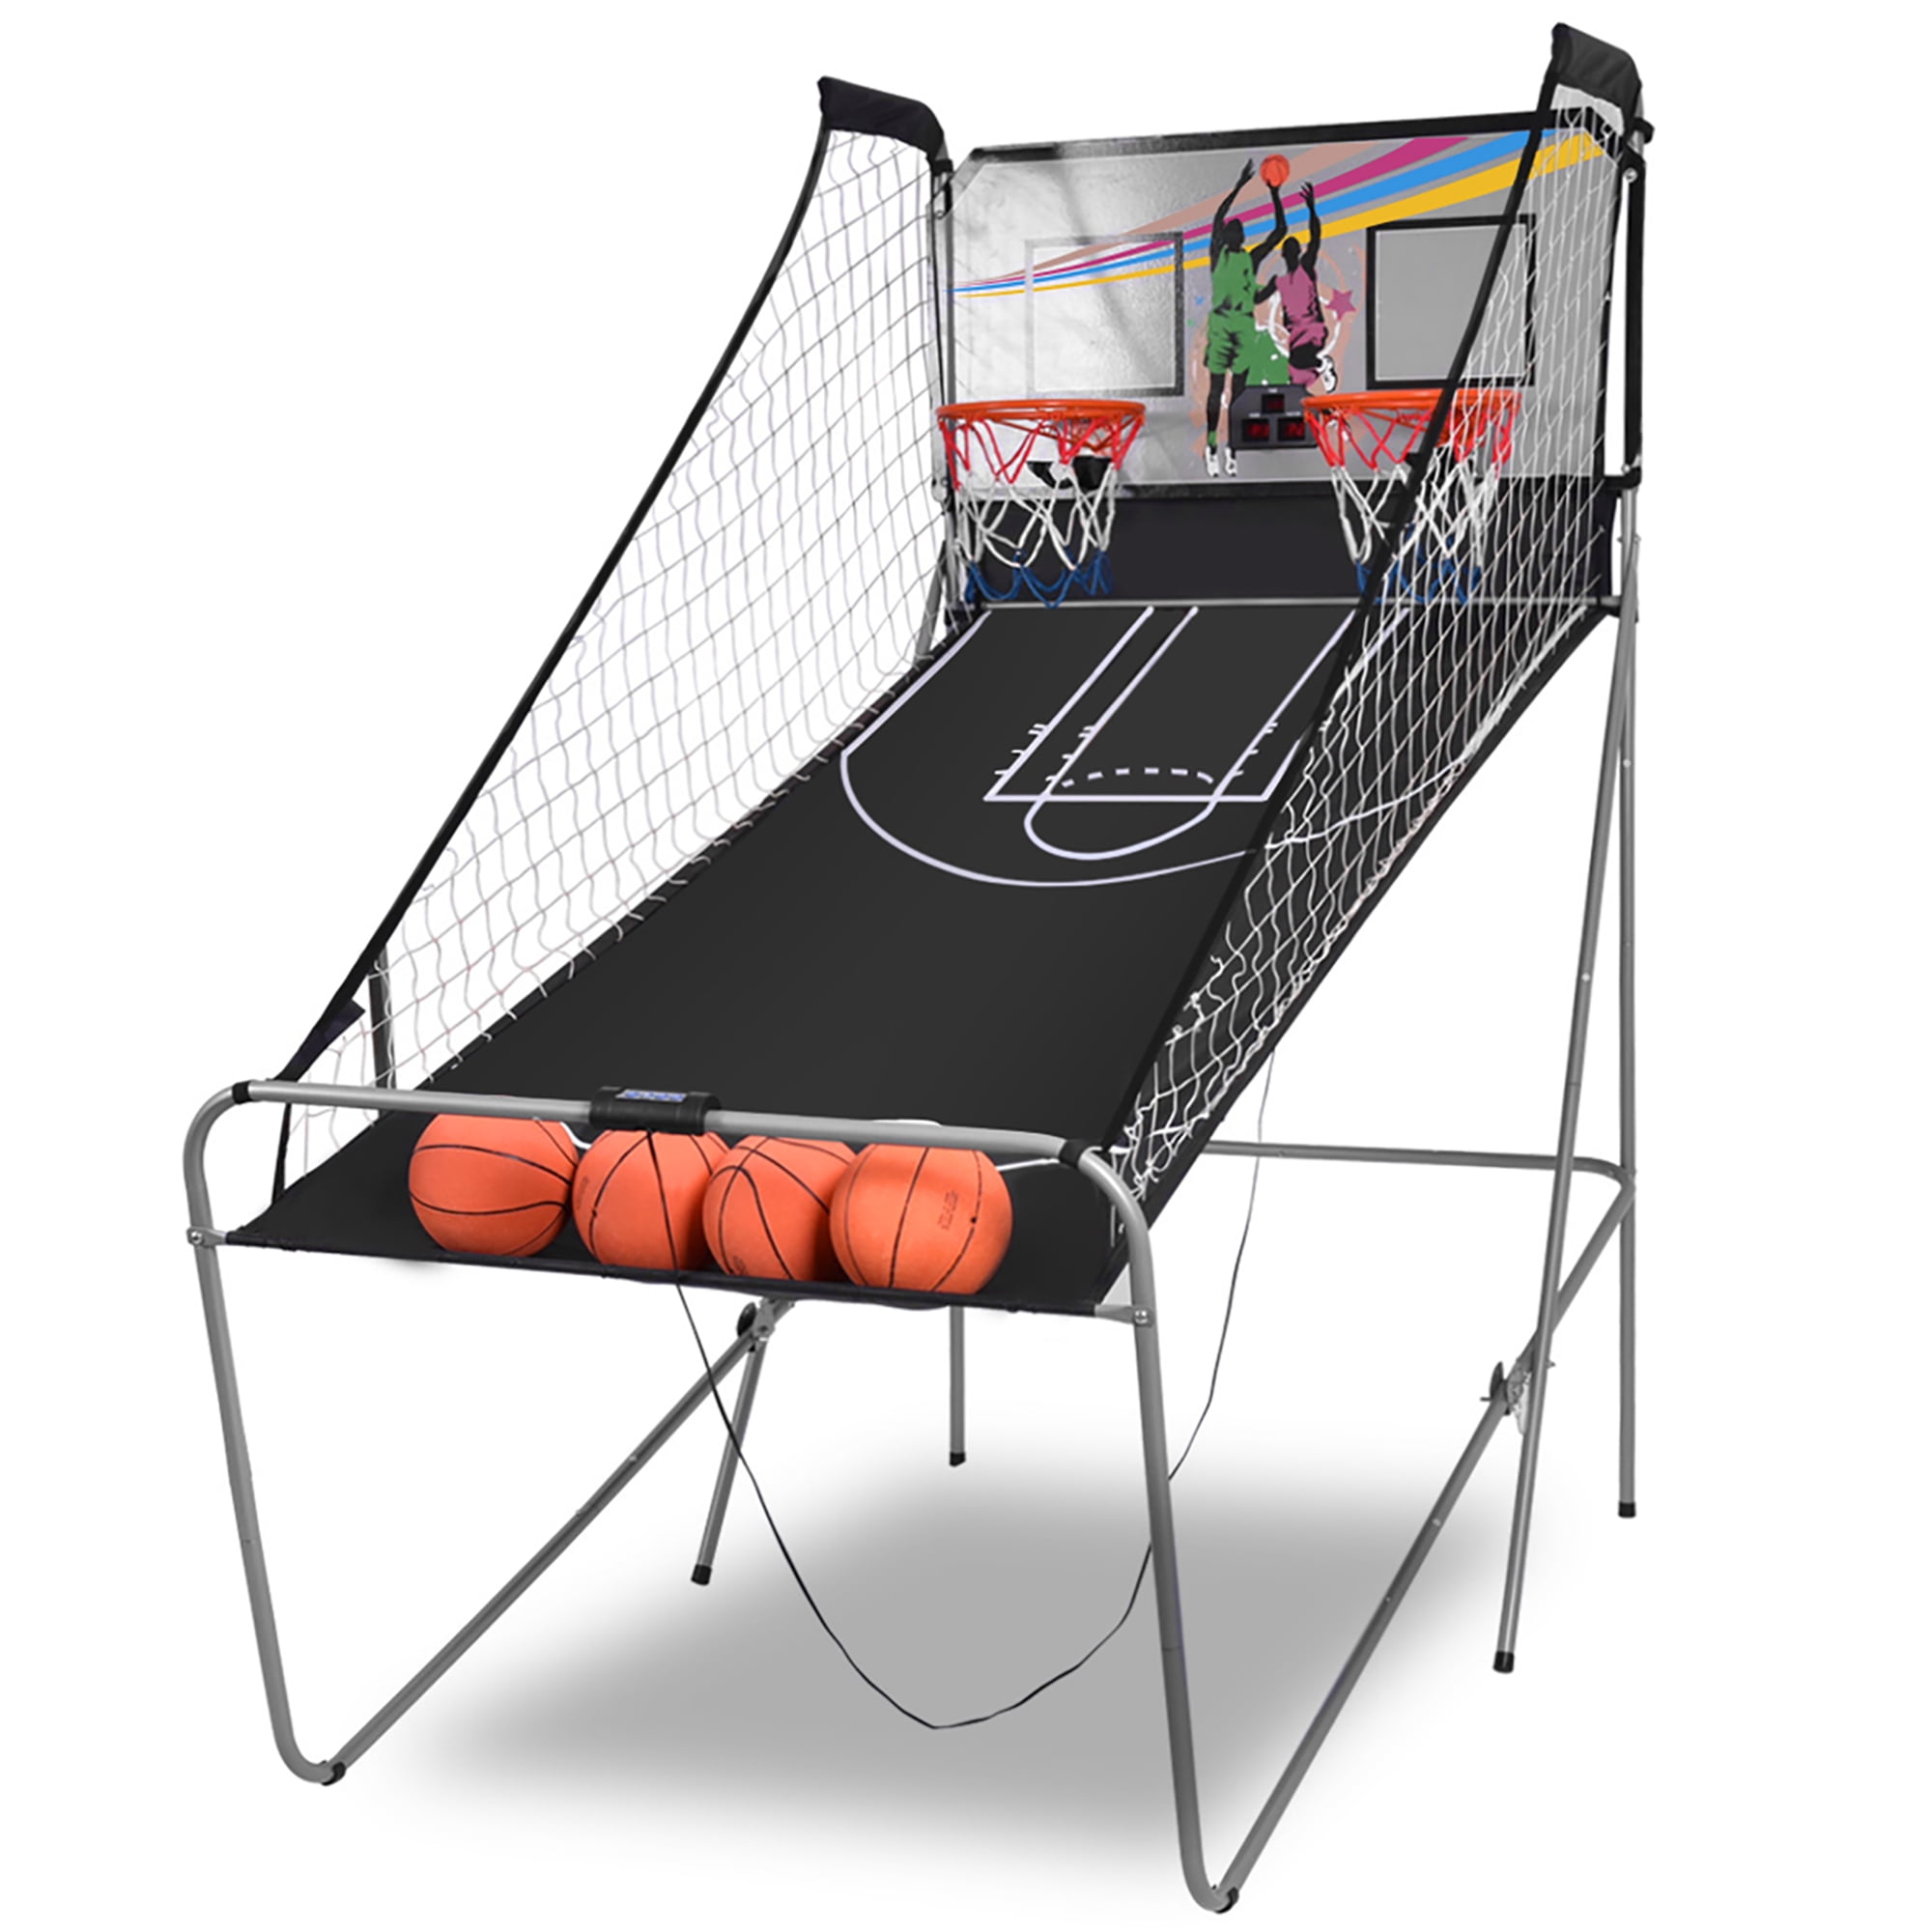 Electronic Arcade Basketball Hoop Shooting Challenge Game with Scorer